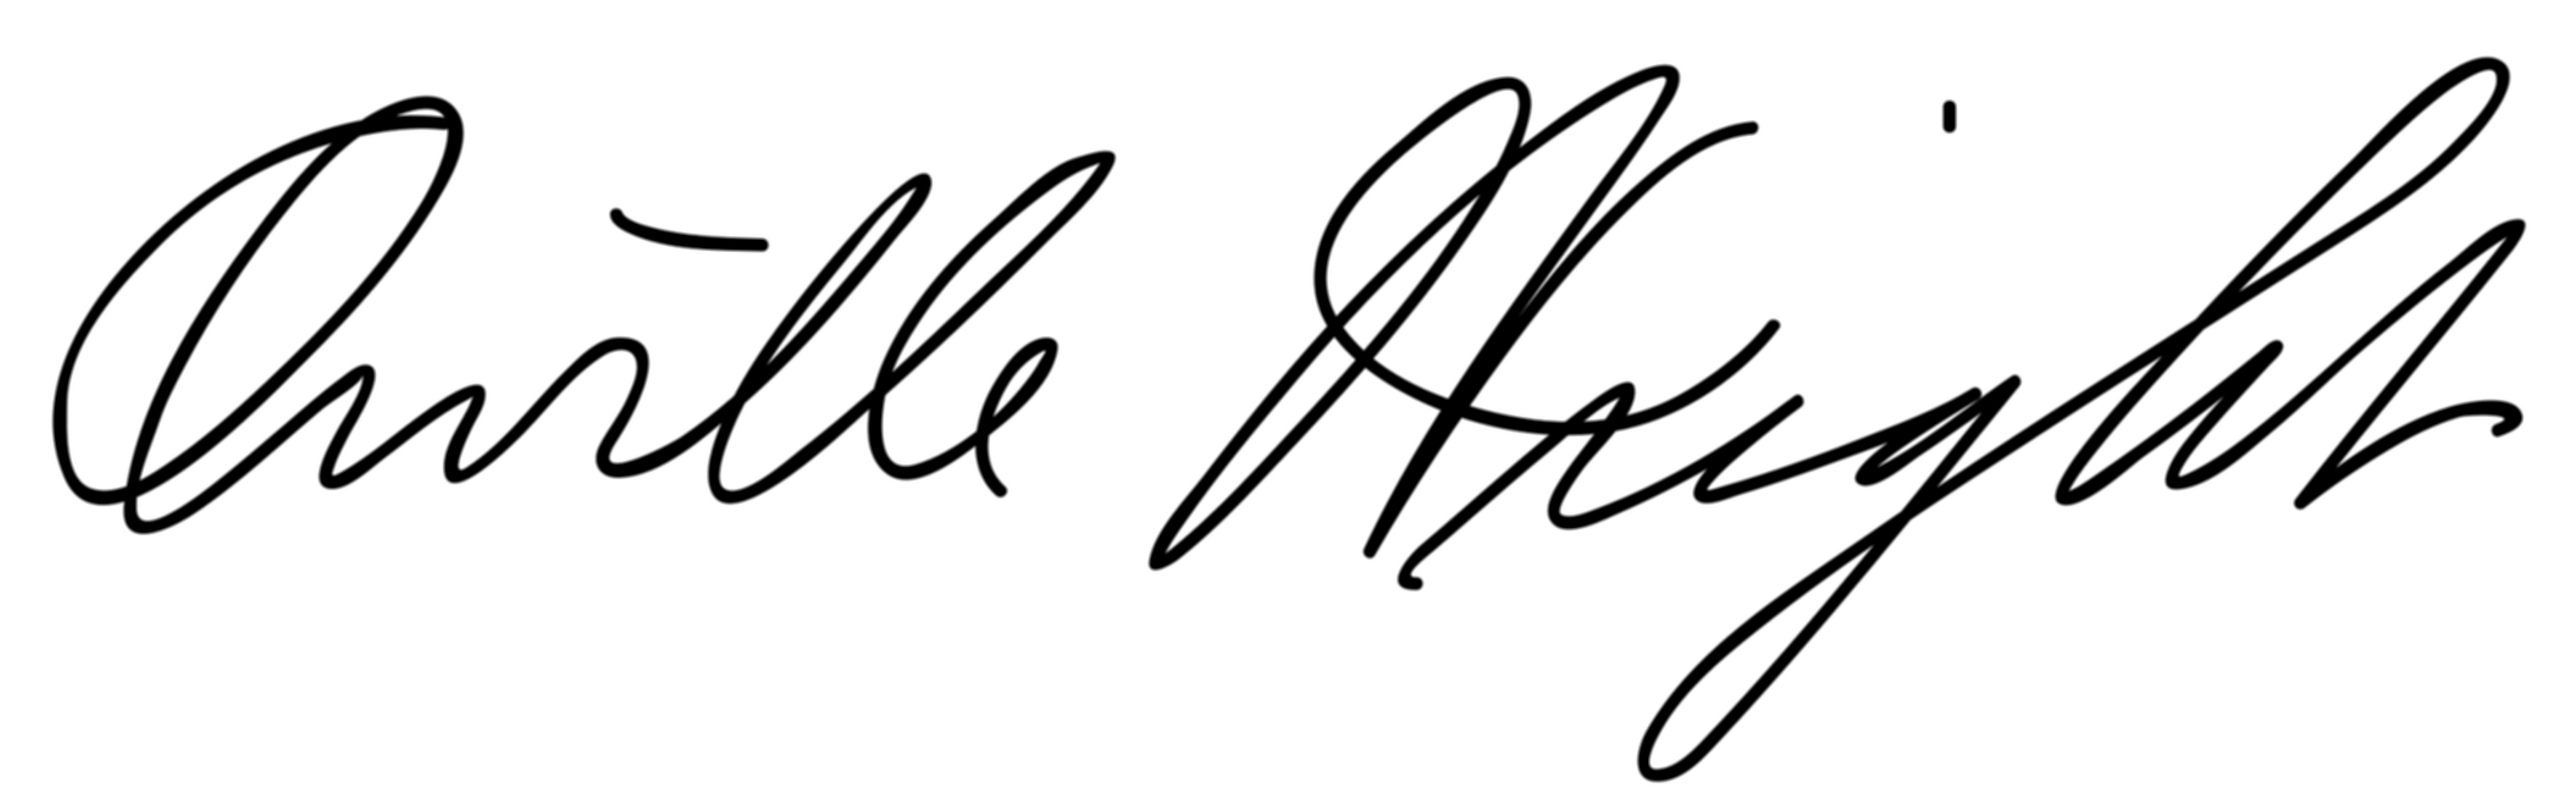 파일:Orville_Wright_Signature.svg.png